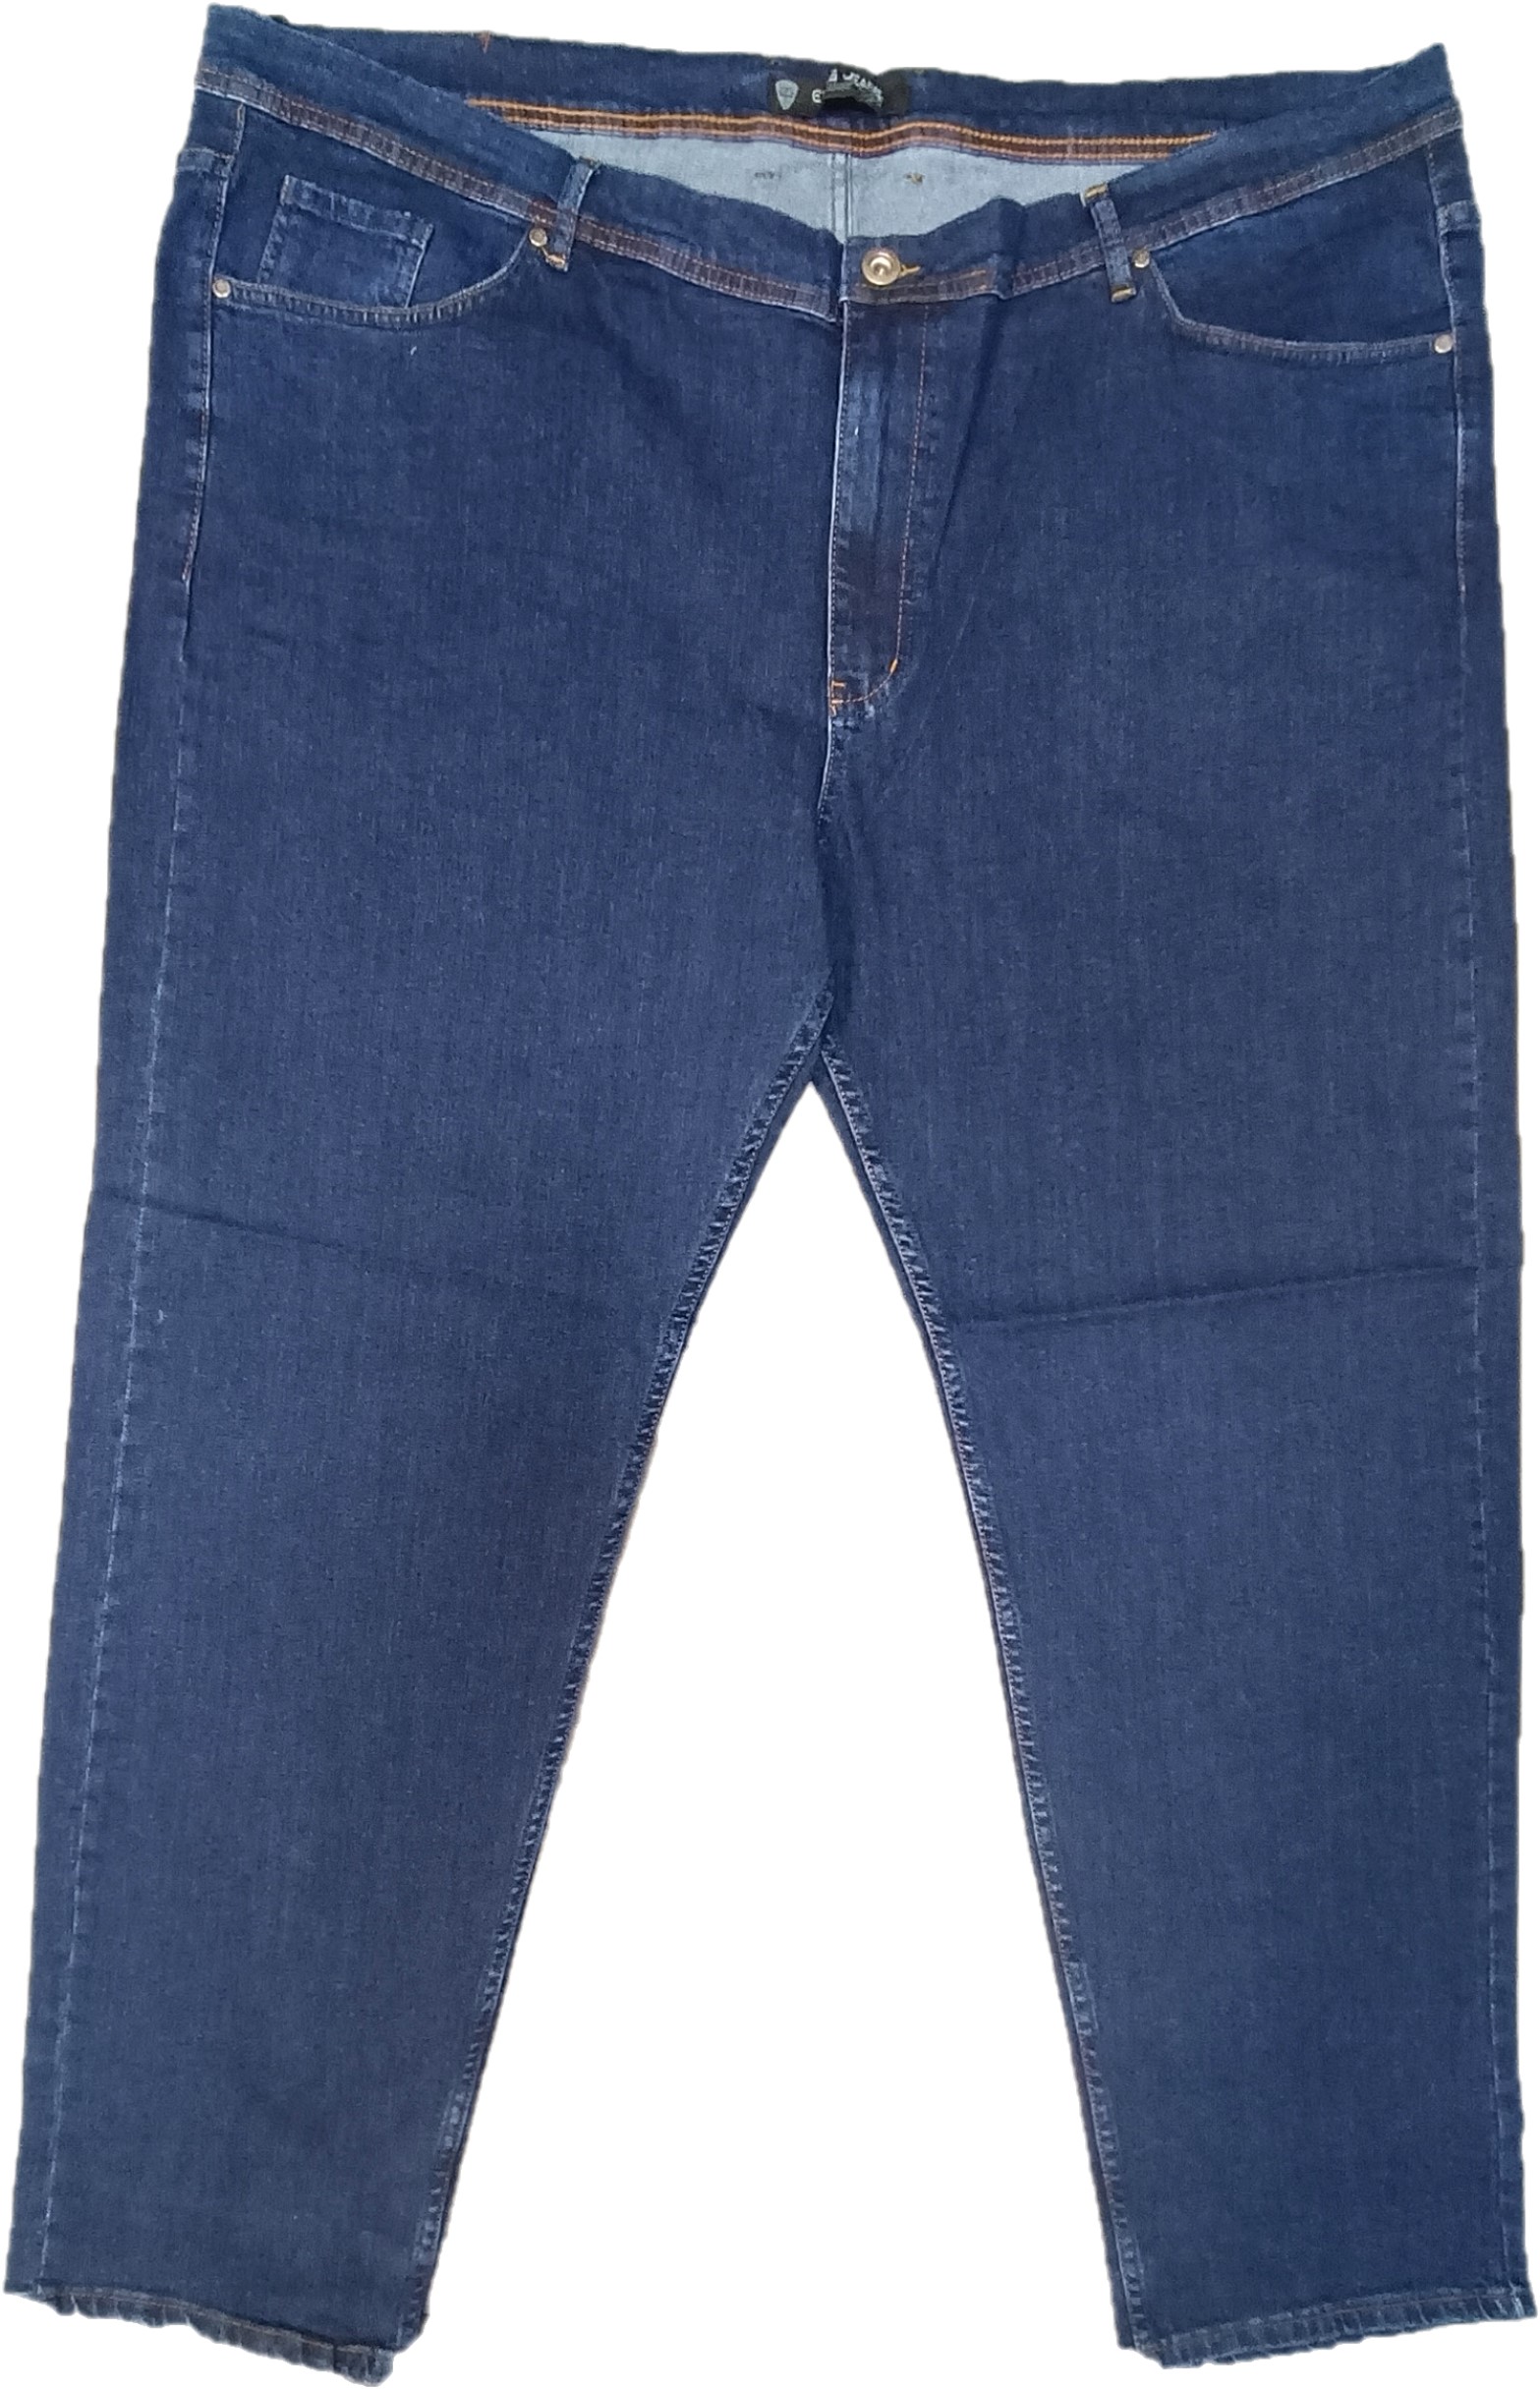 Джинсы мужские Epos Jeans 680055 синие 74 RU